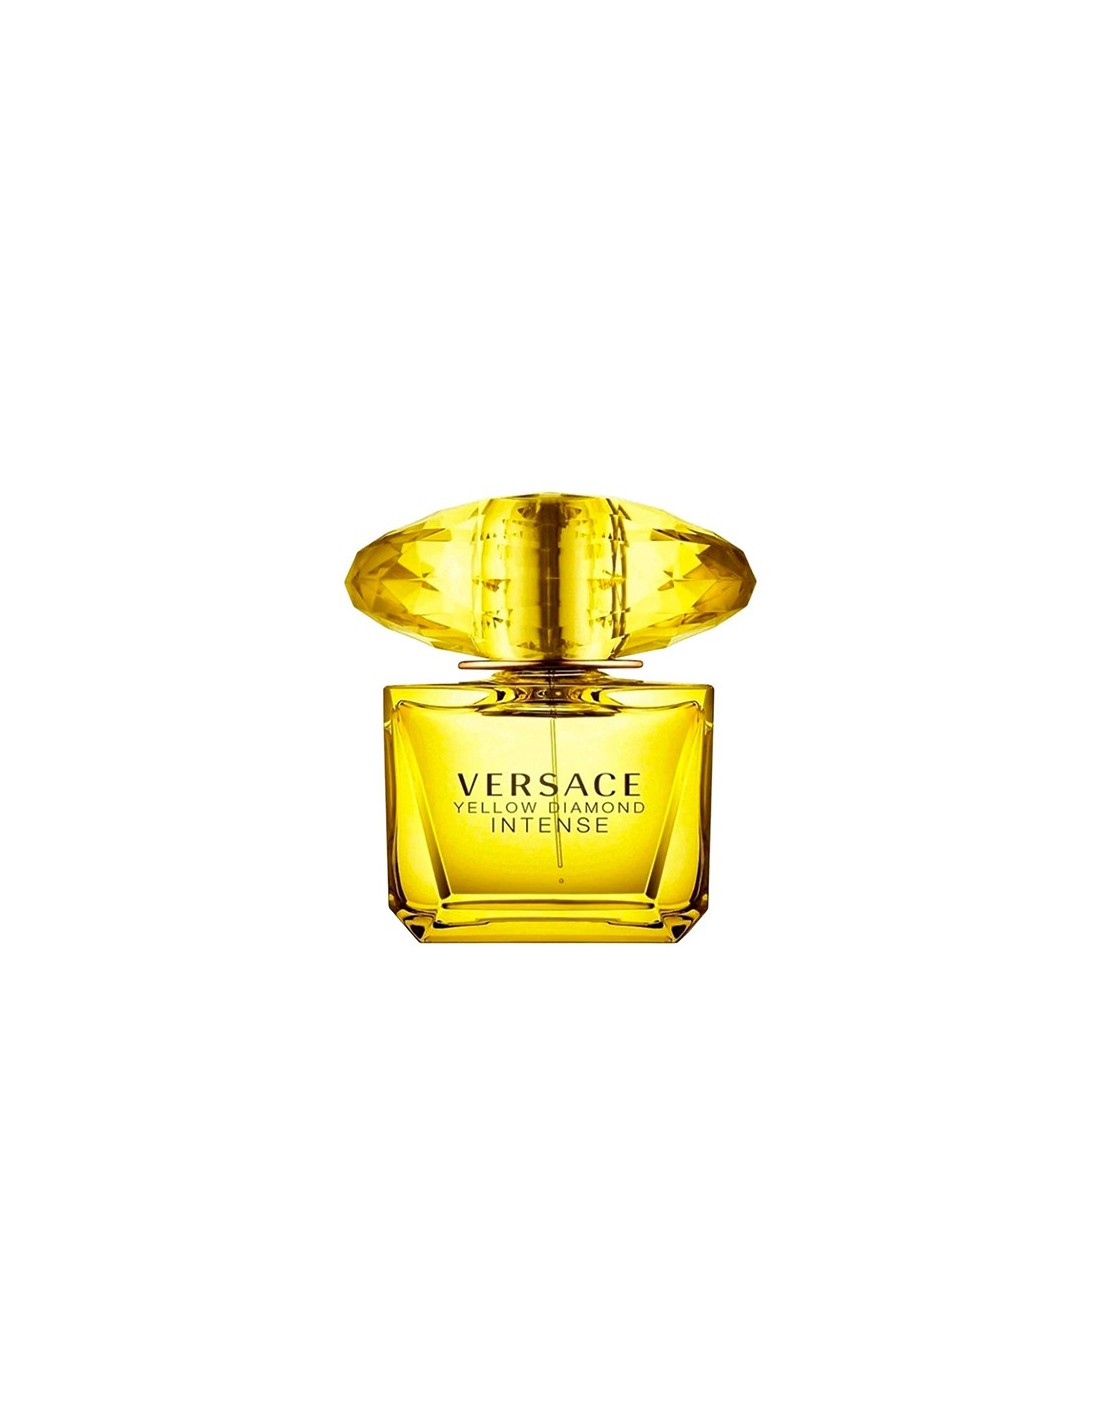 Versace Yellow Diamond Intense 90 ml eau de parfum